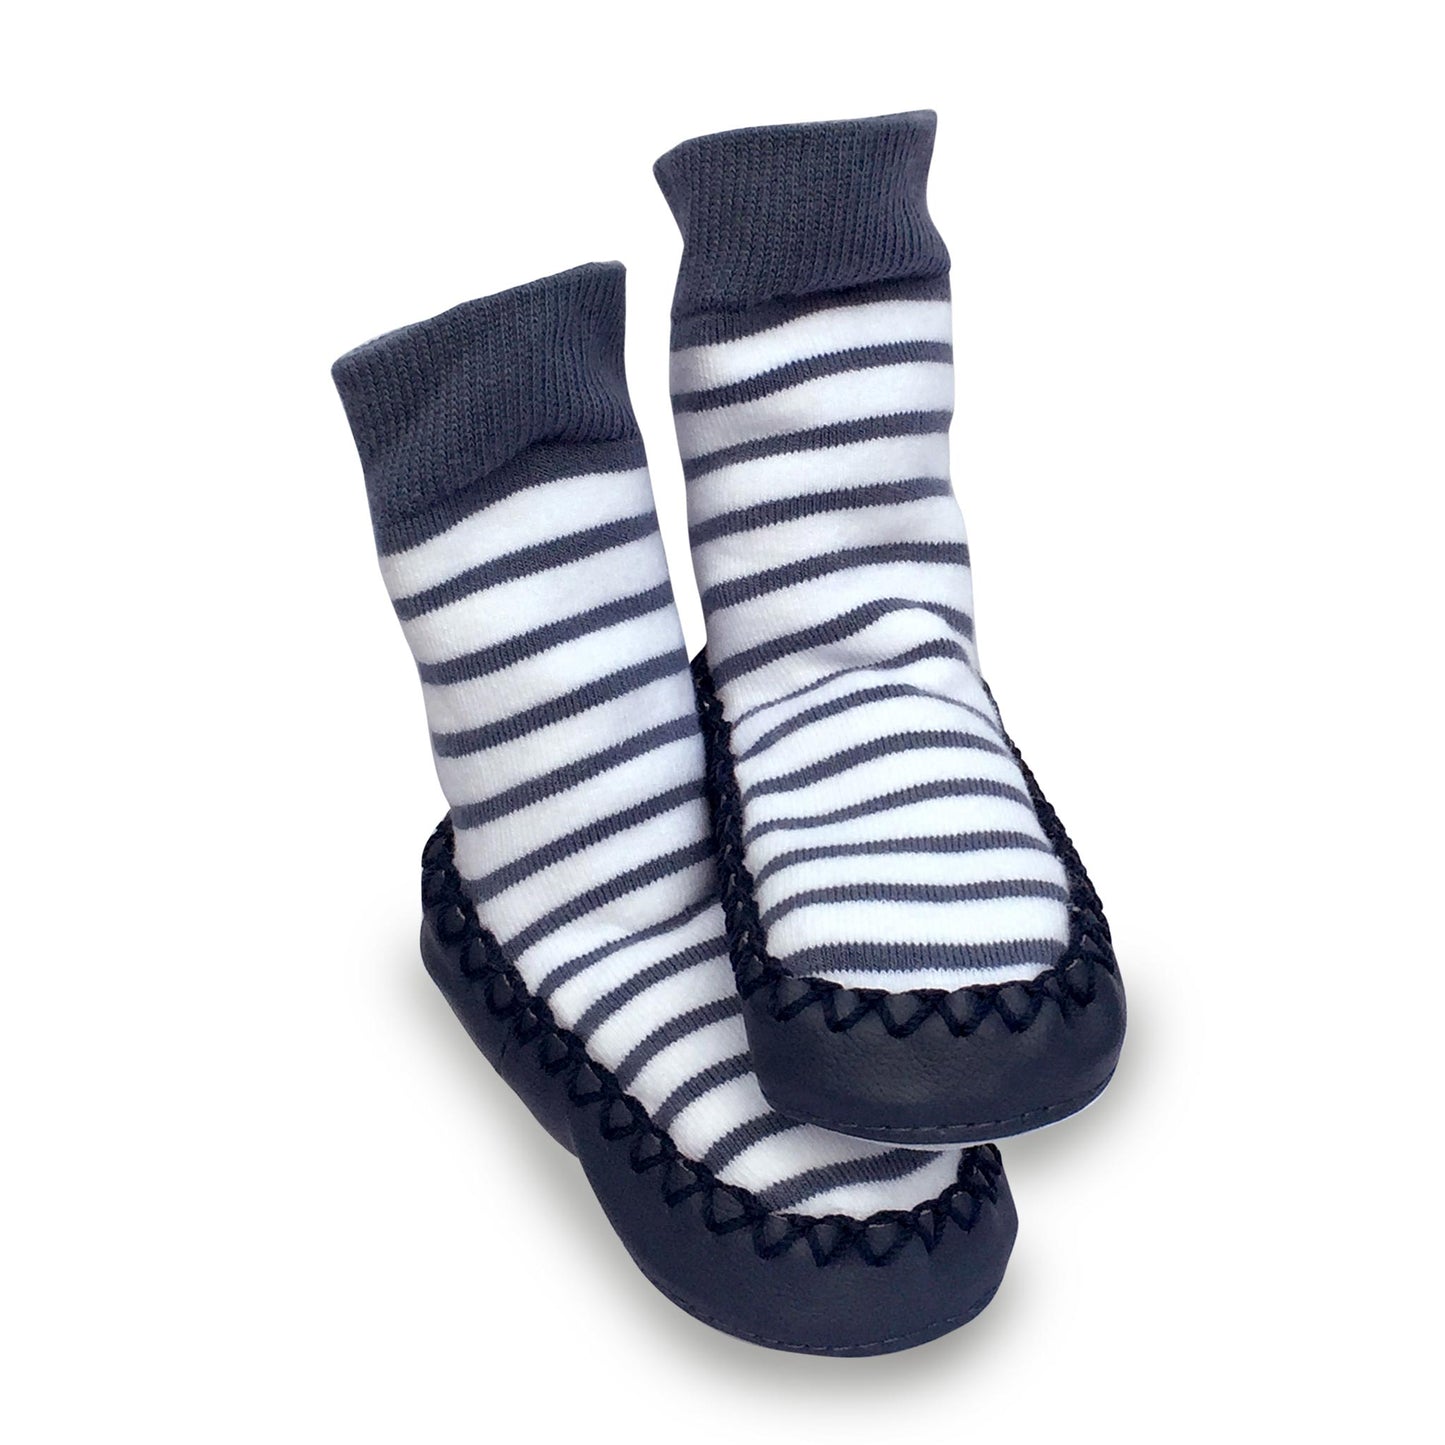 Mocc Ons Slipper Socks (Nautical Stripe)